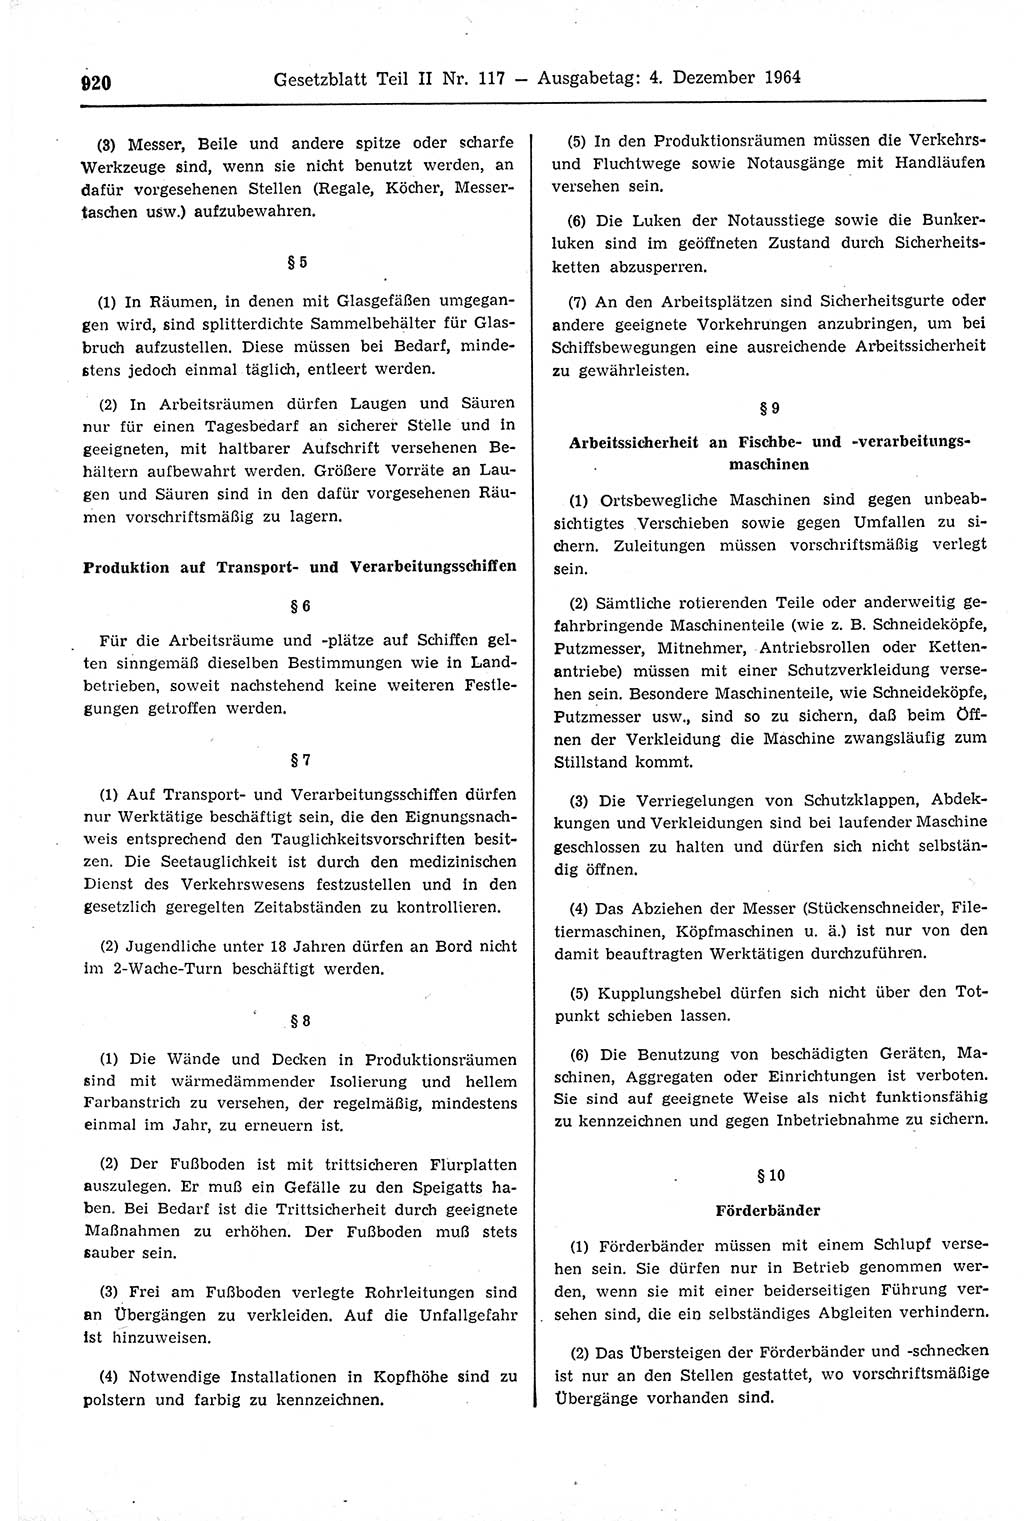 Gesetzblatt (GBl.) der Deutschen Demokratischen Republik (DDR) Teil ⅠⅠ 1964, Seite 920 (GBl. DDR ⅠⅠ 1964, S. 920)